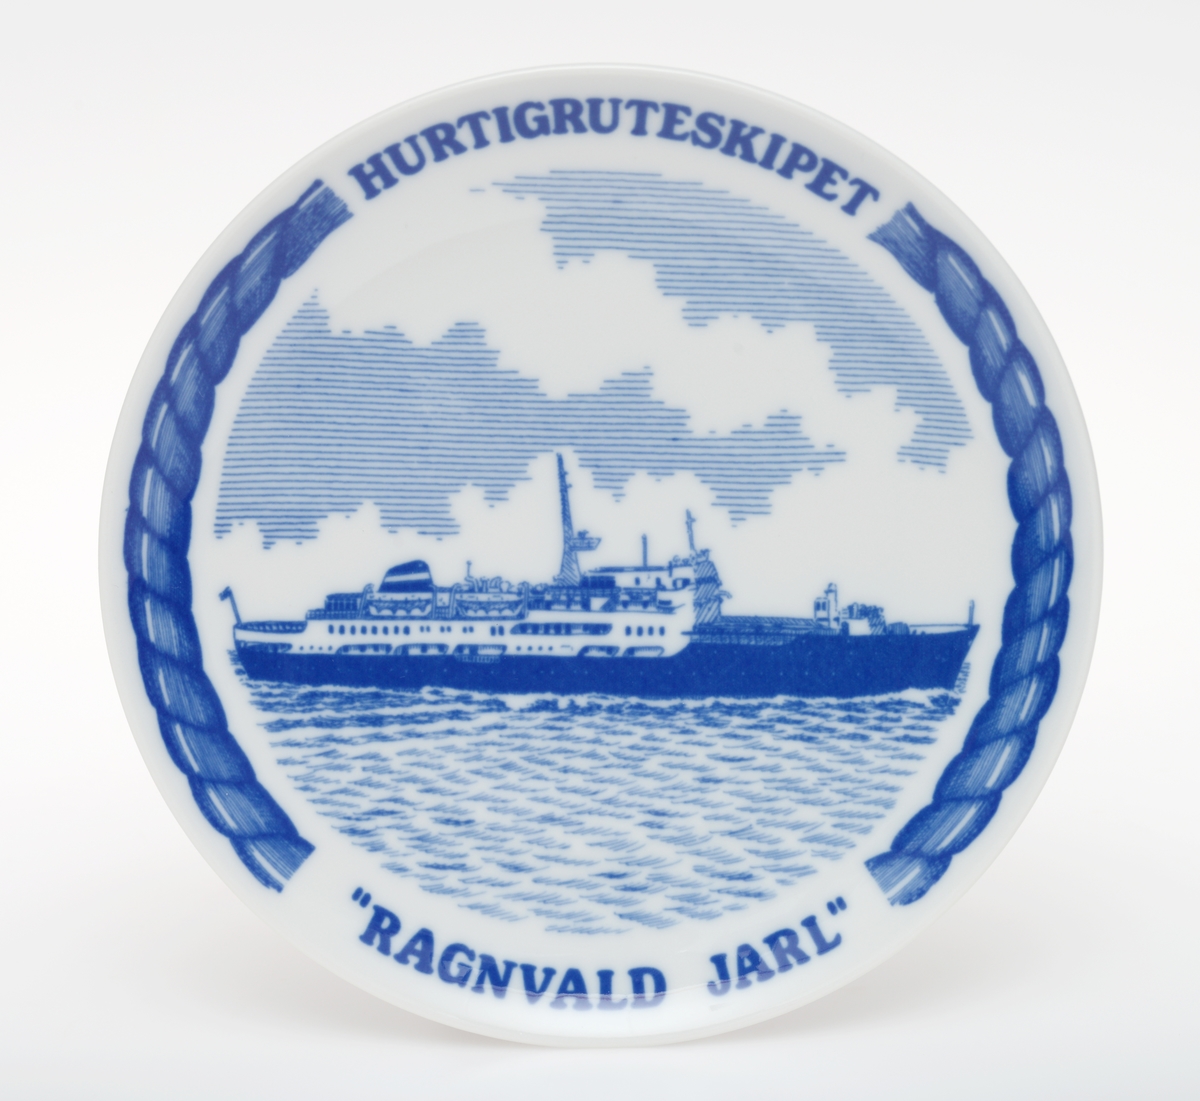 Motiv av Hurtigruten M/S RAGNVALD JARL.